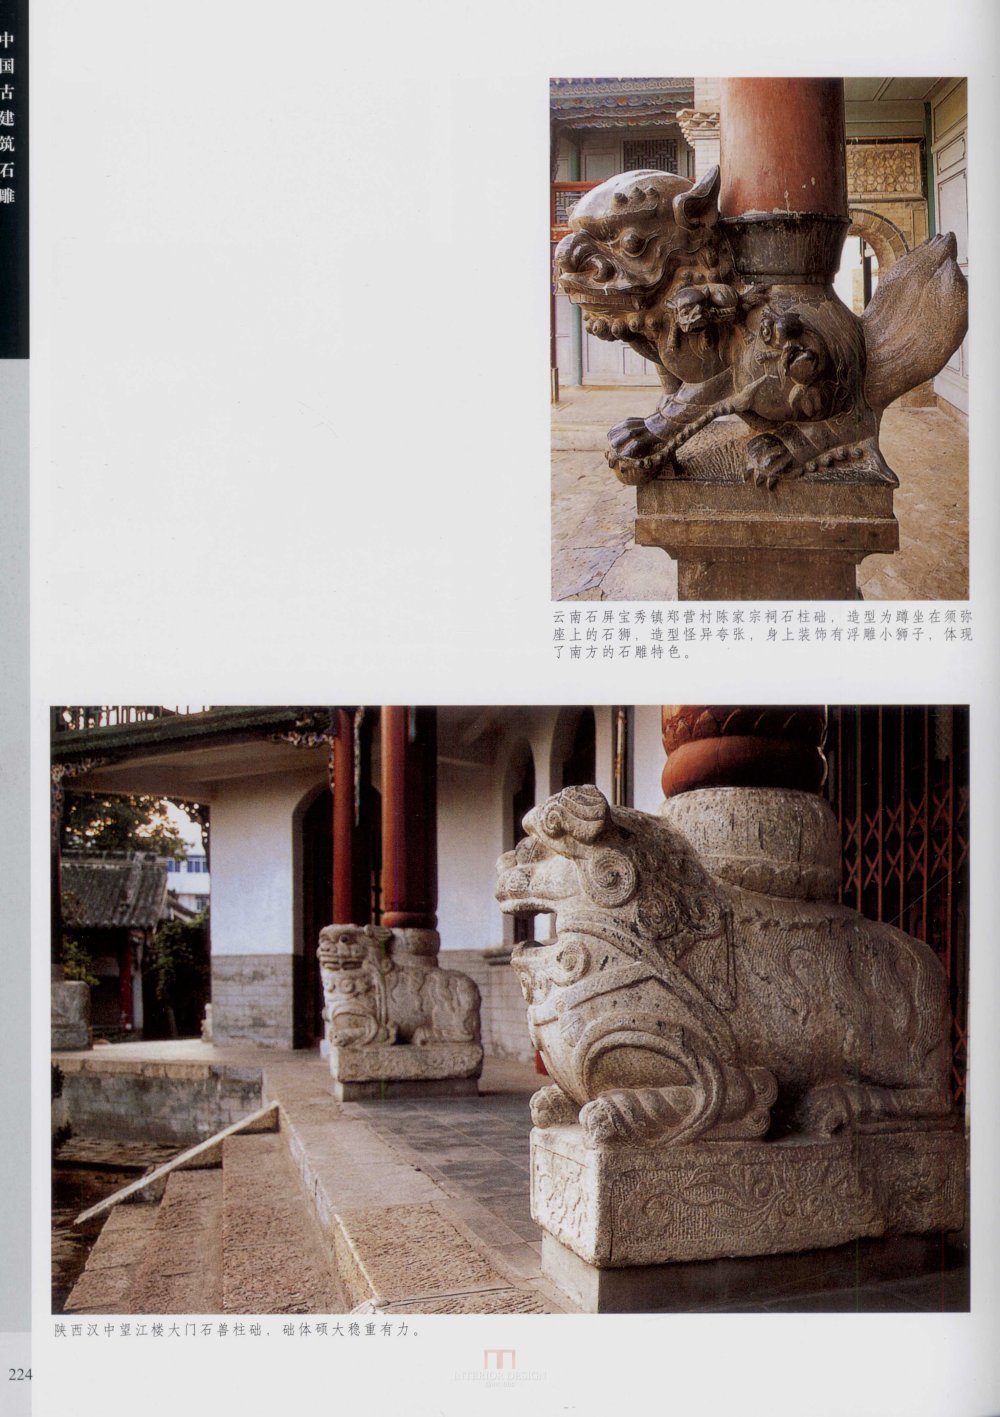 中国古代建筑 石雕_kobe 0231.jpg